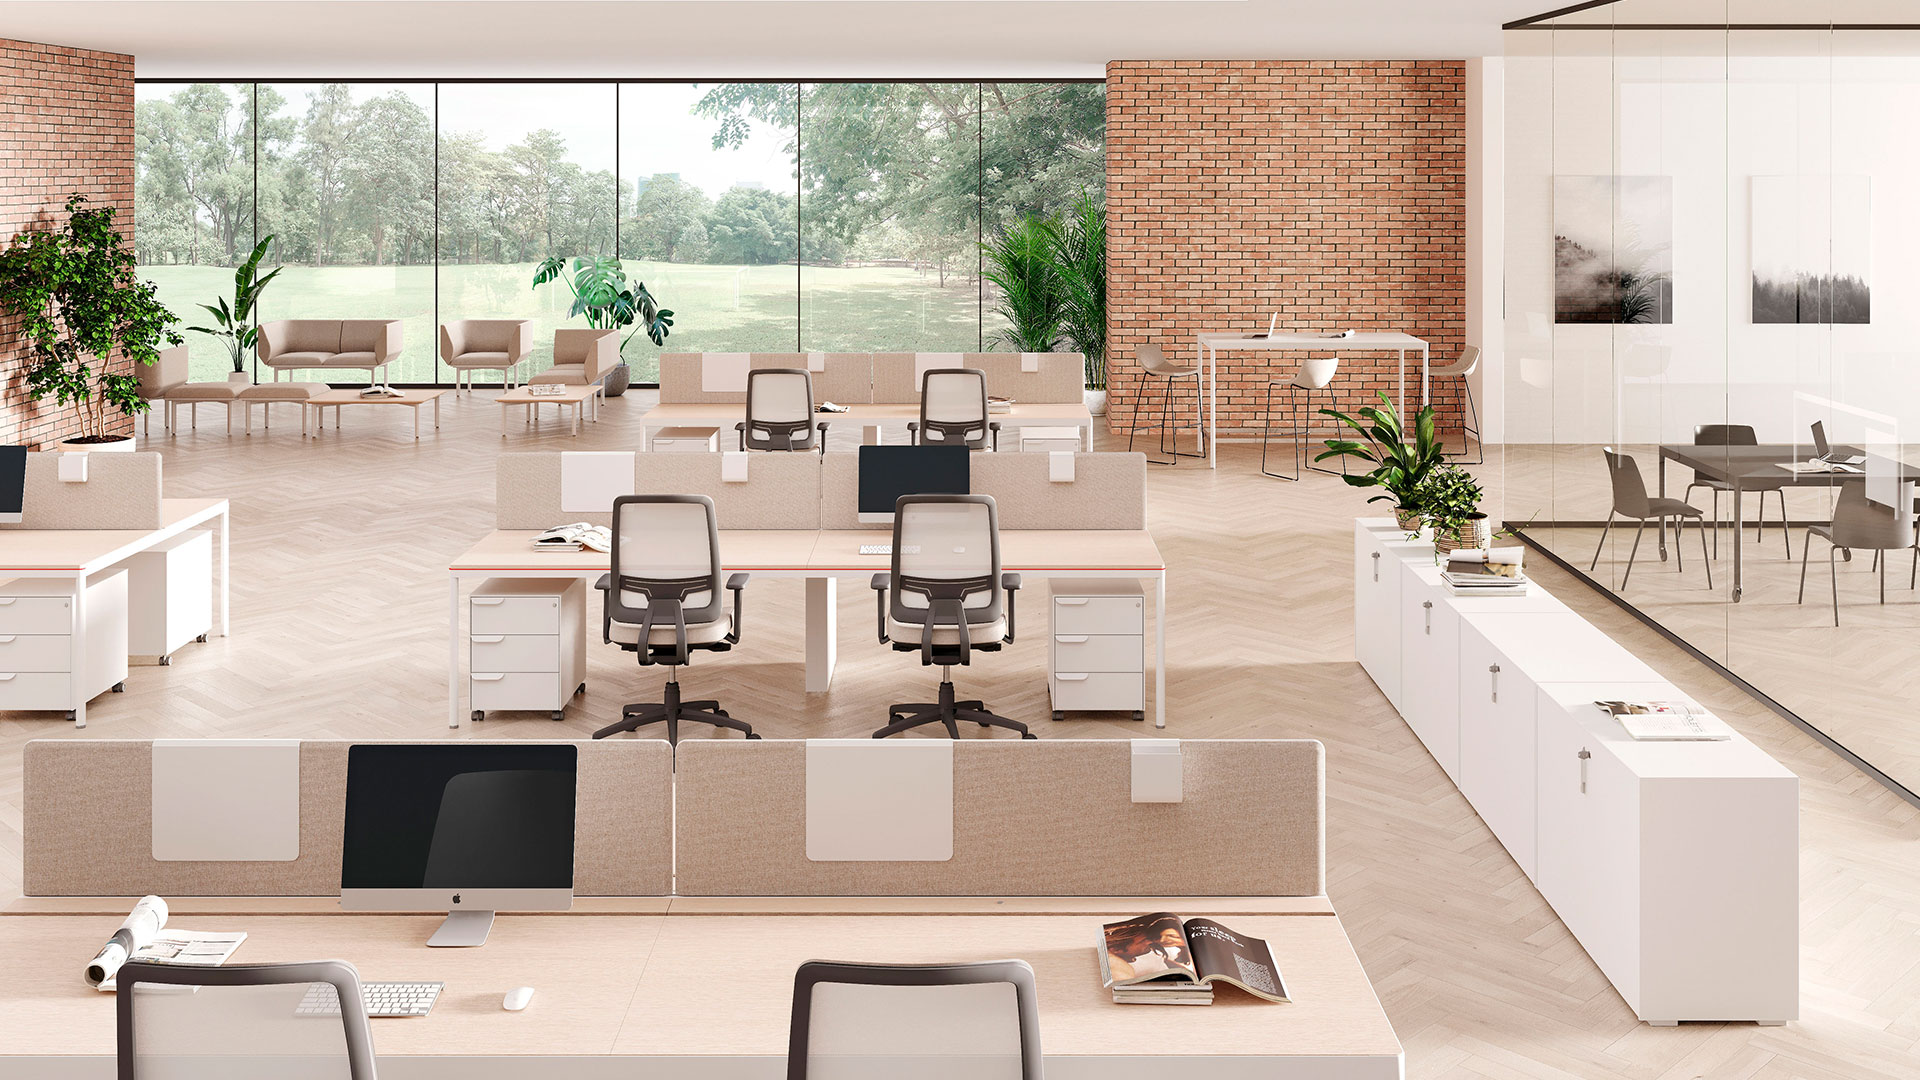 С помощью коллекции столов на круглых опорах Fil Rouge легко организовать функциональное рабочее пространство